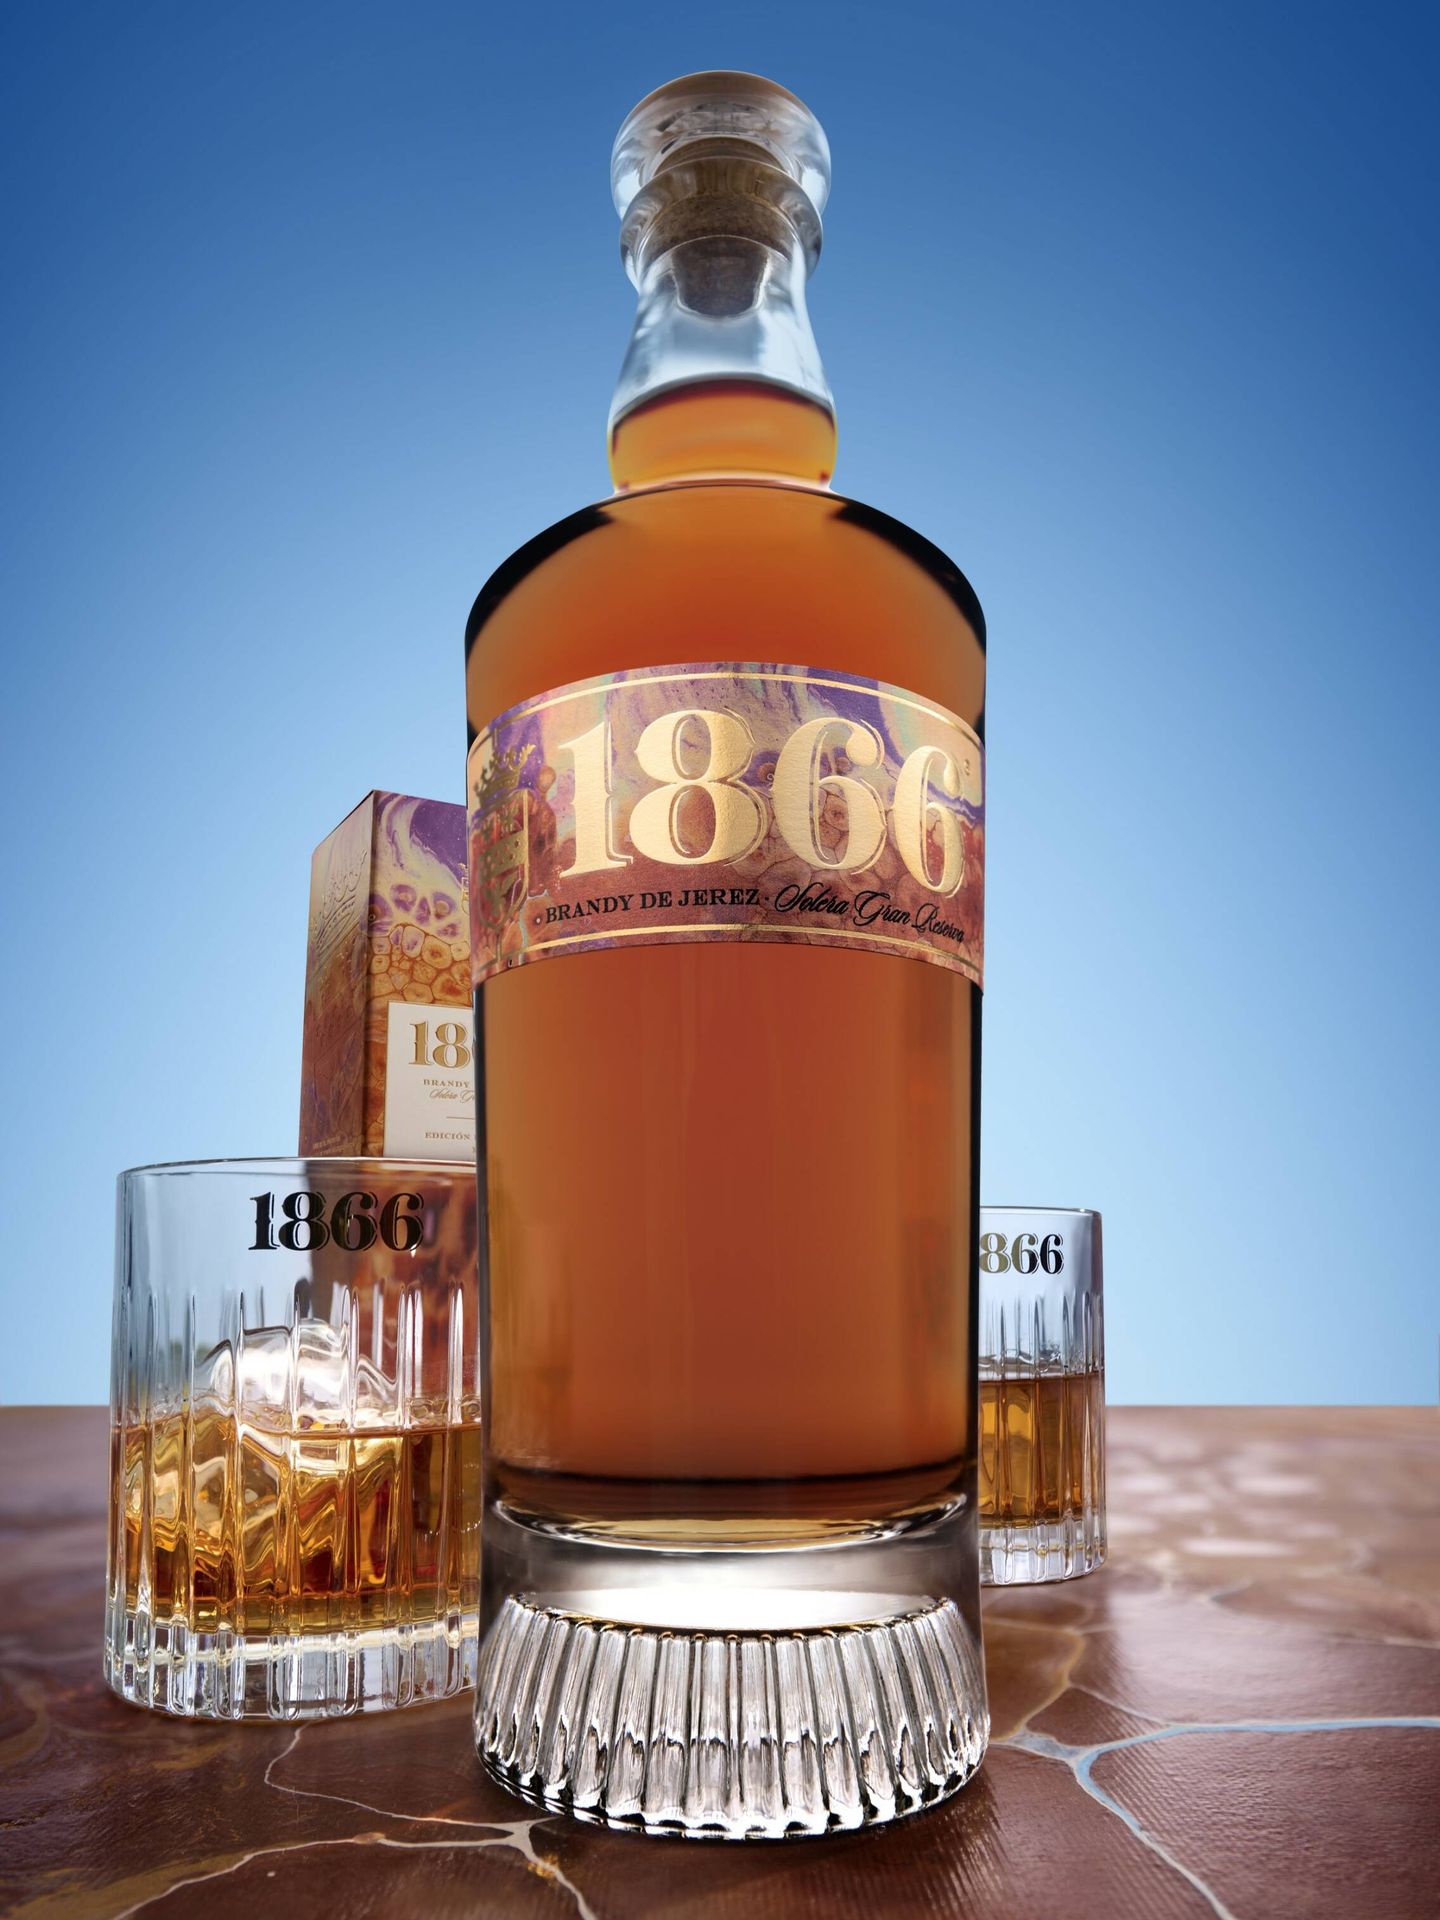 1886 Brandy de Jerez. (Cortesía)